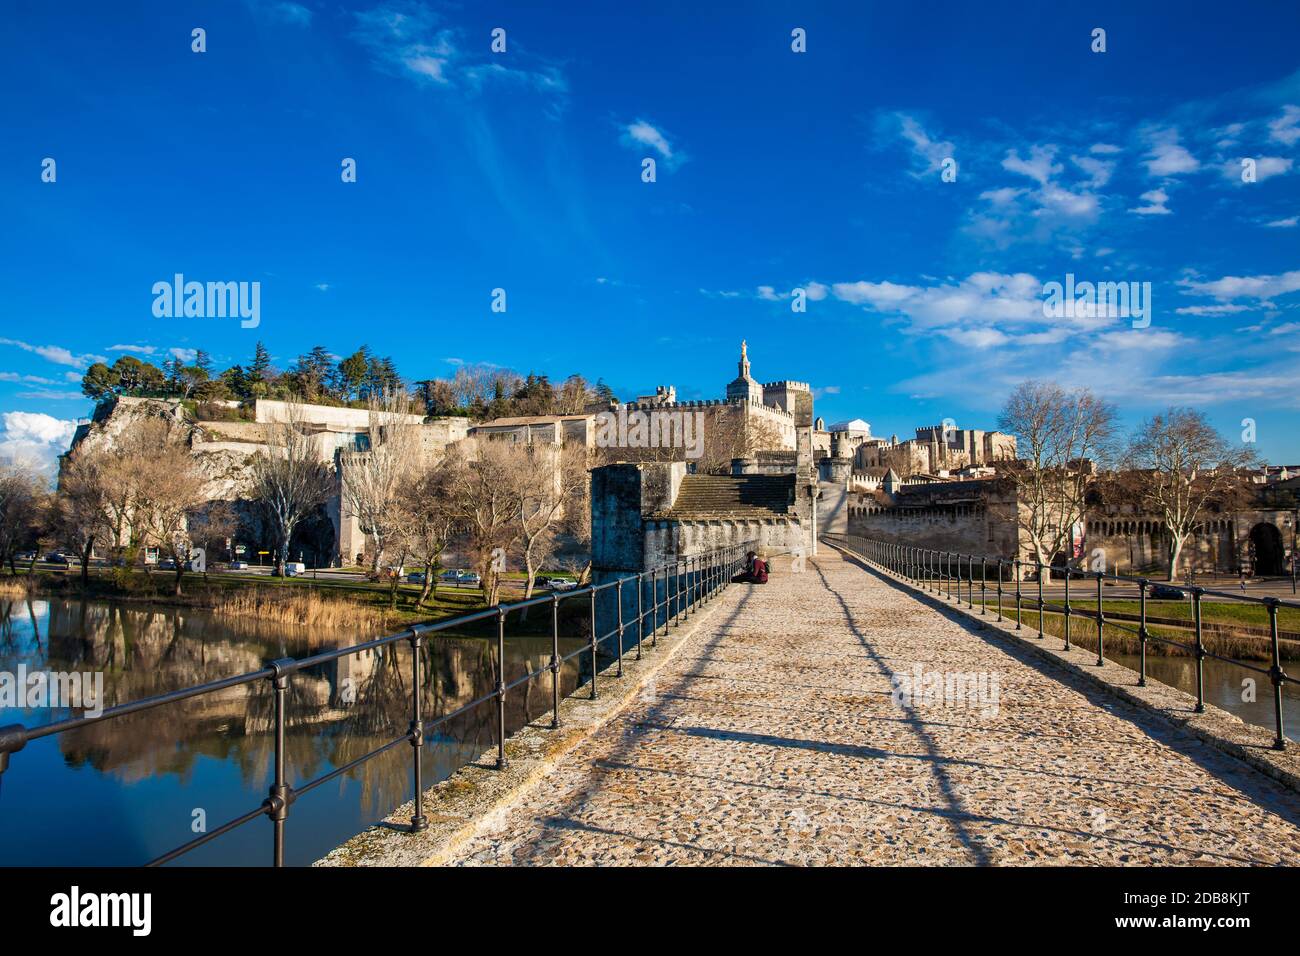 Auch die berühmte Brücke von Avignon Pont Saint-Benezet bei Avignon Frankreich Stockfoto